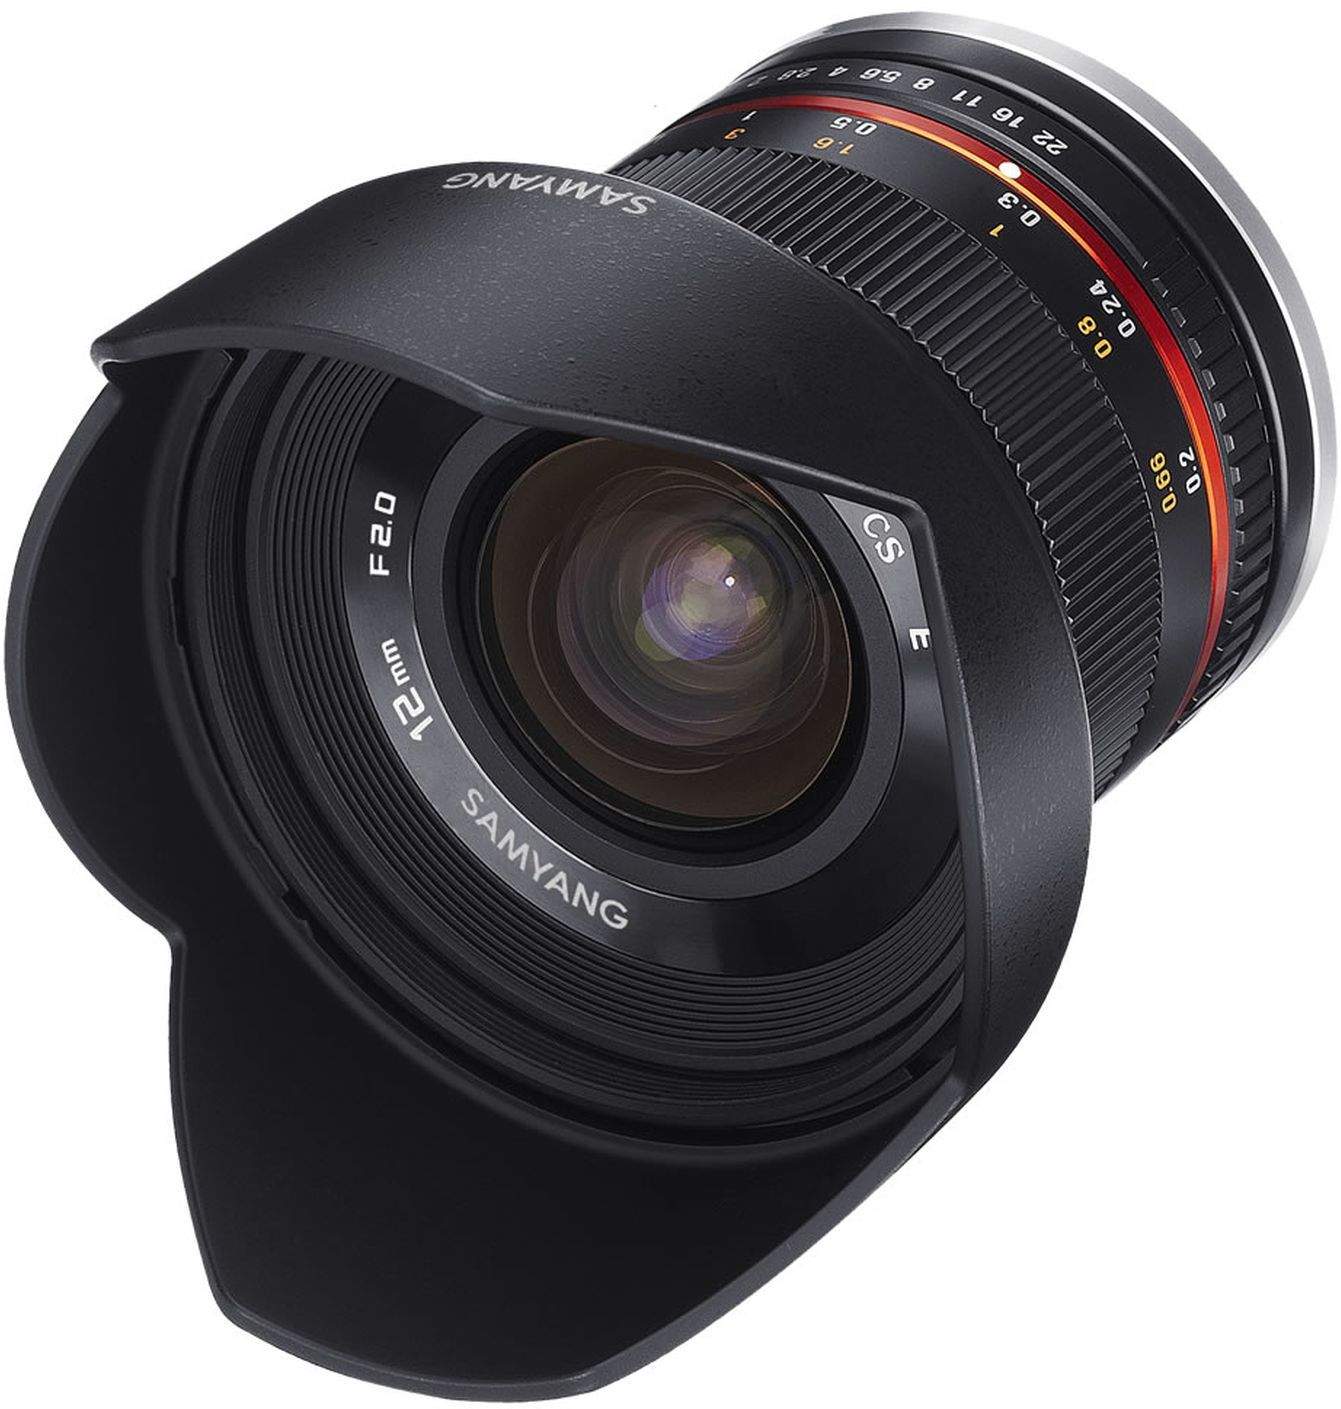 Samyang 12mm F2.0 NCS CS Sony FE Camera Lens - Black